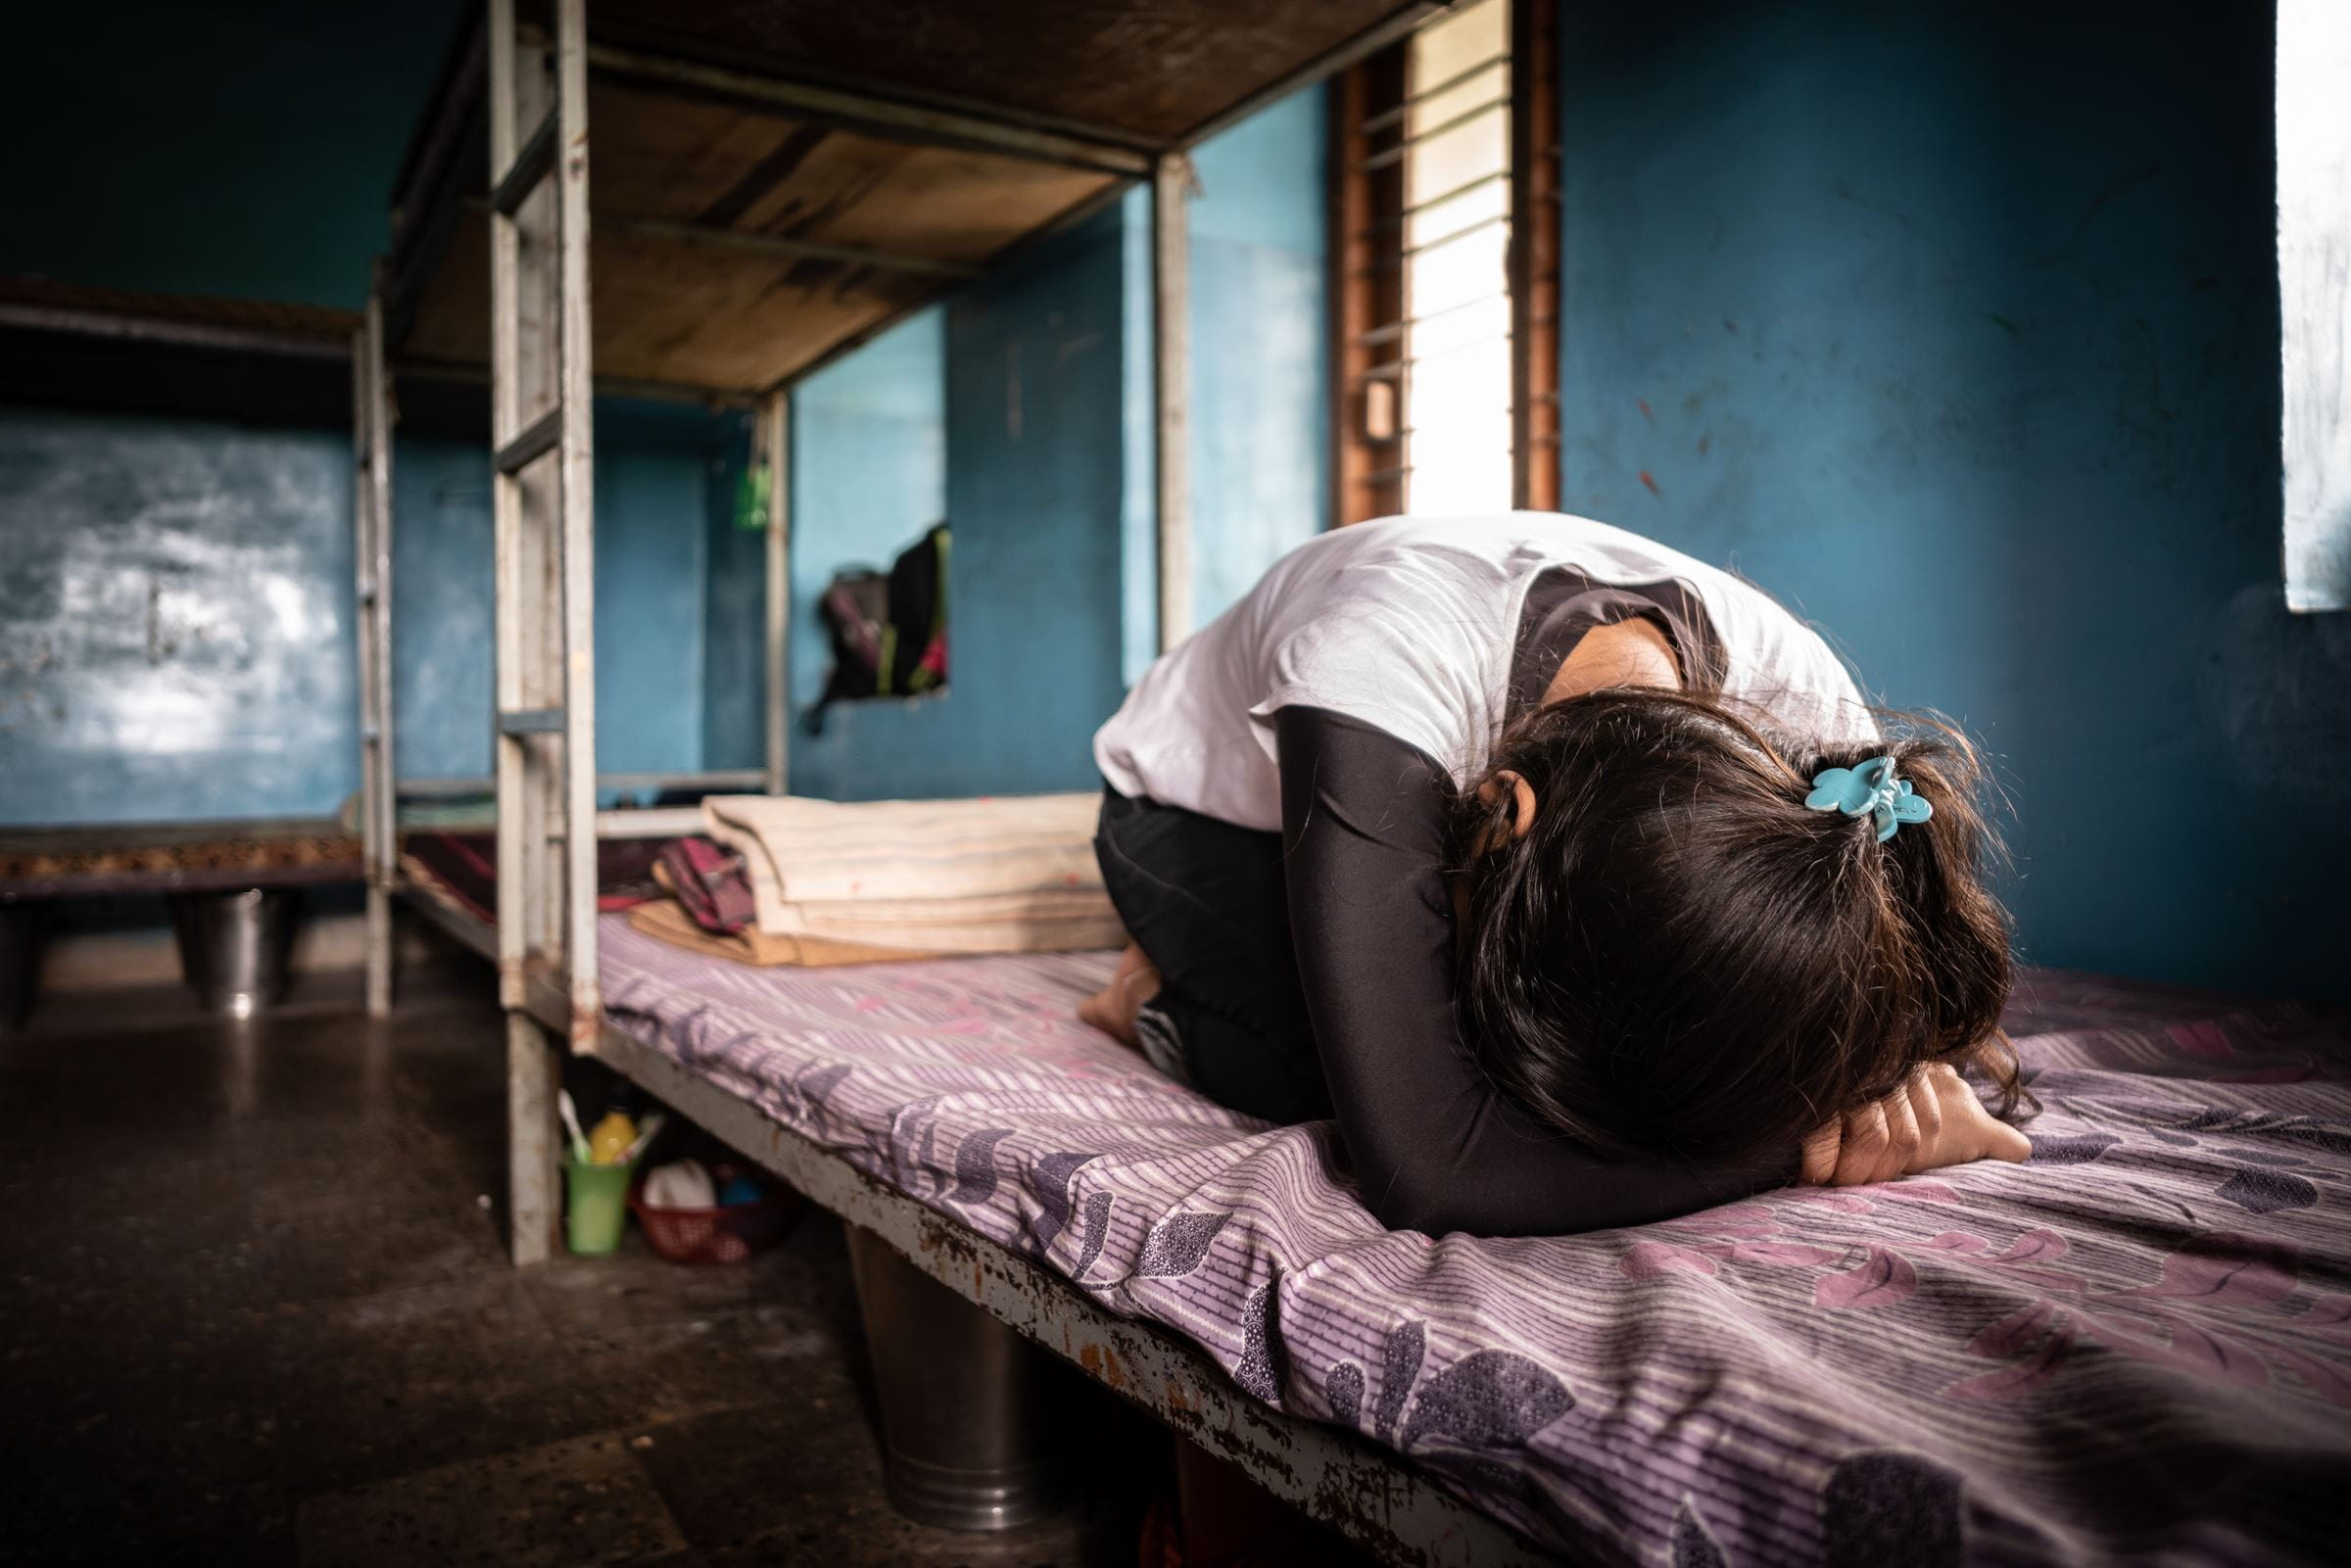 Ein Mädchen liegt zusammengekauert auf einem einfachen Bett und verbirgt ihr Gesicht in ihren Armen. (Quelle: Jakob Studnar)